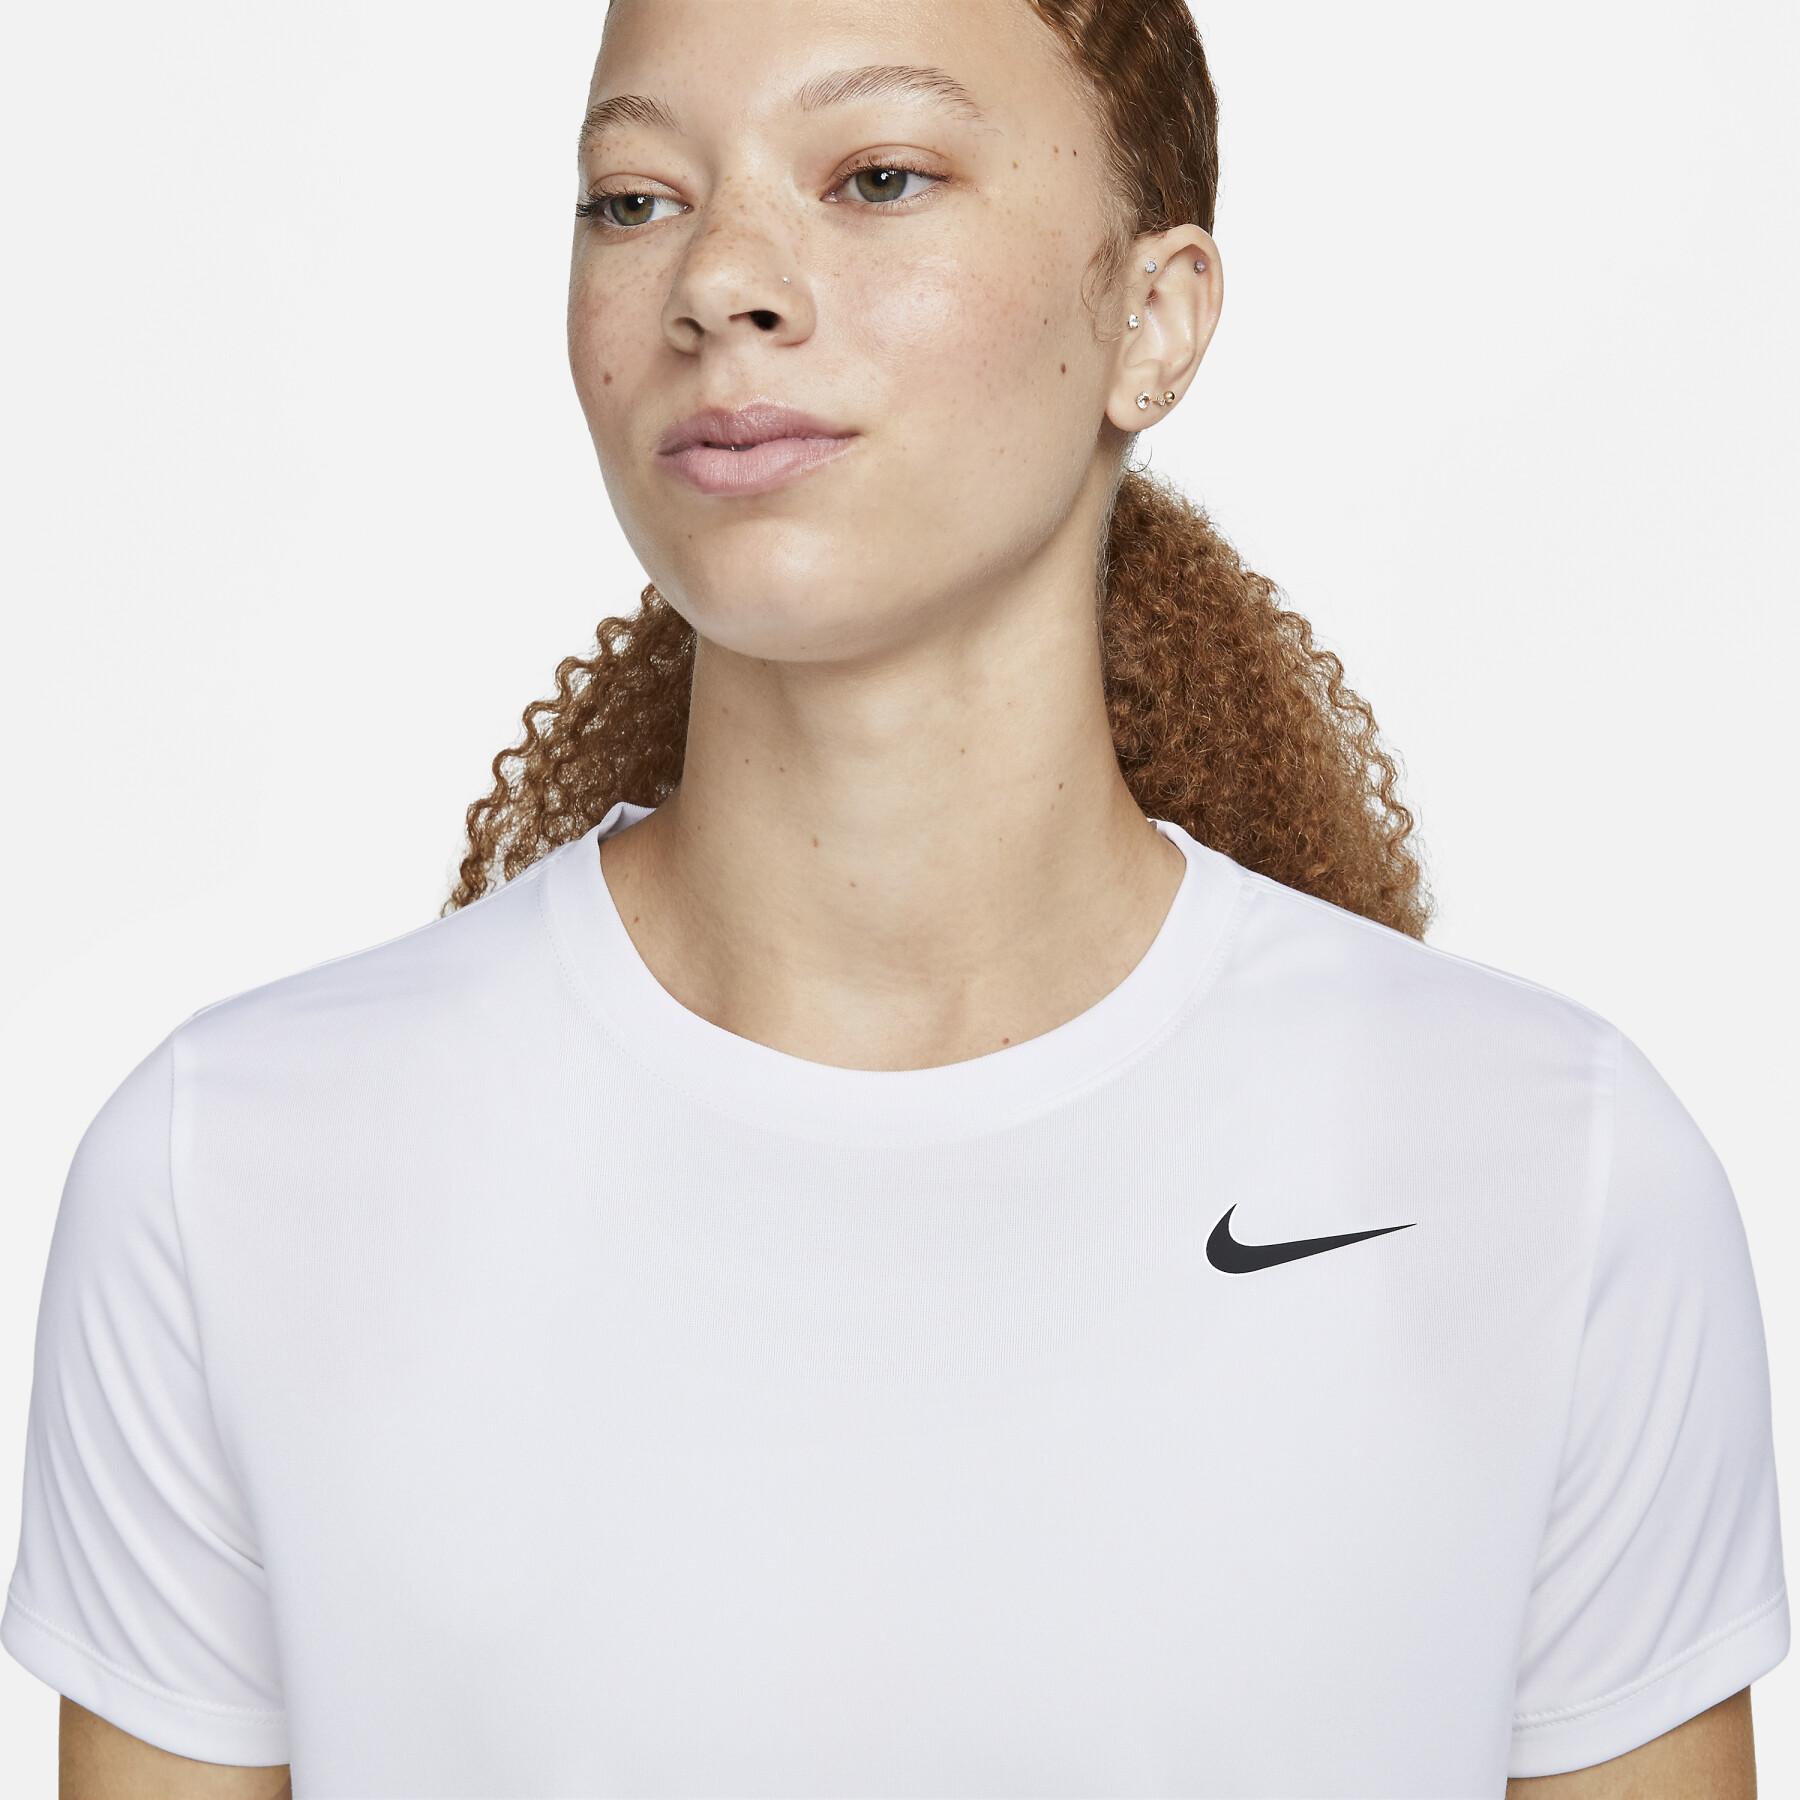 Women's T-shirt Nike Dri-FIT RLGD LBR